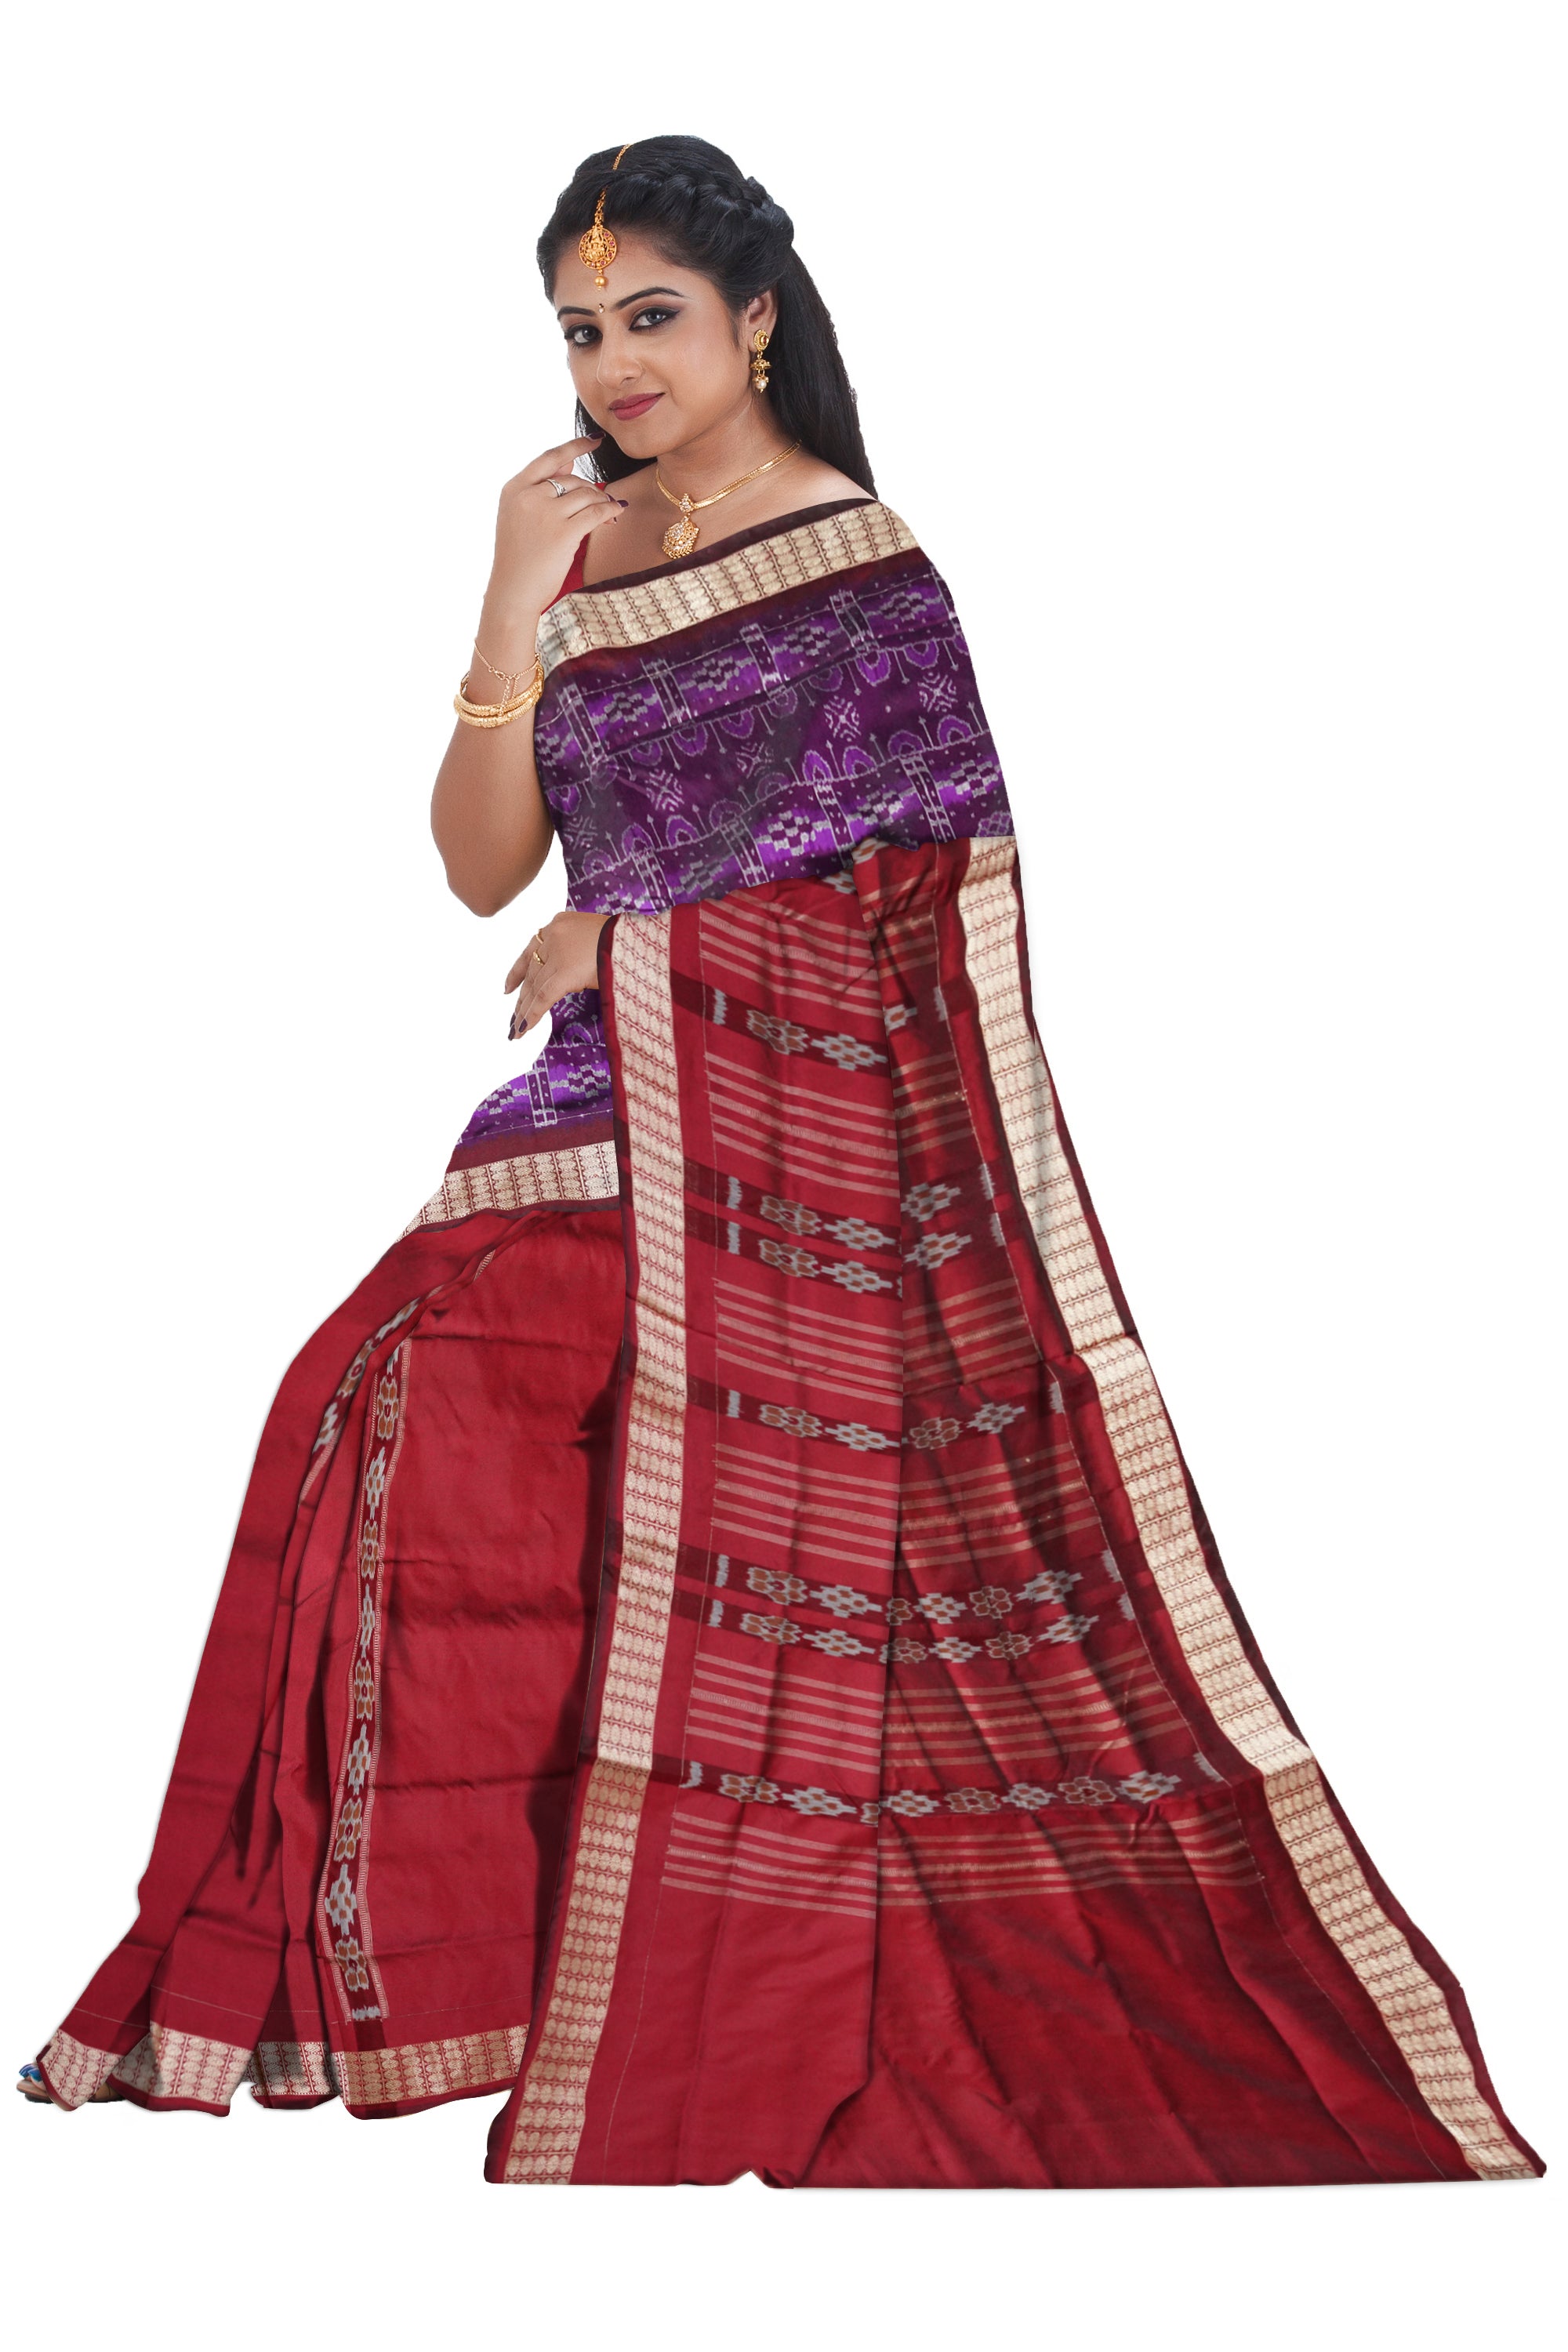 Purple and Maroon Pasapali pattern patli pata saree, matching blouse. - Koshali Arts & Crafts Enterprise